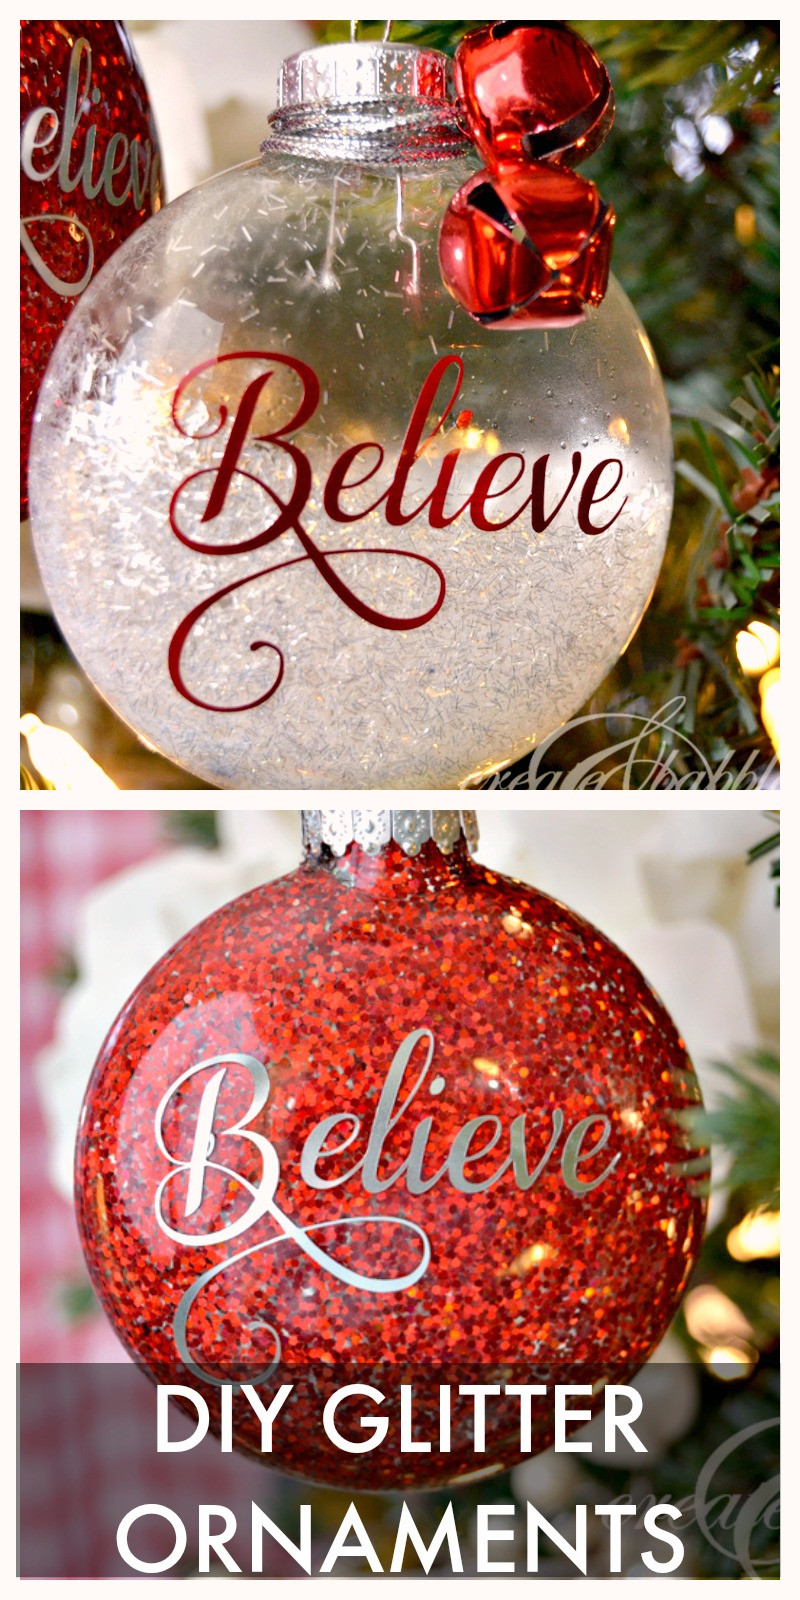 DIY Christmas Ornaments Ideas
 30 Christmas Tree Ornaments to Make TGIF This Grandma